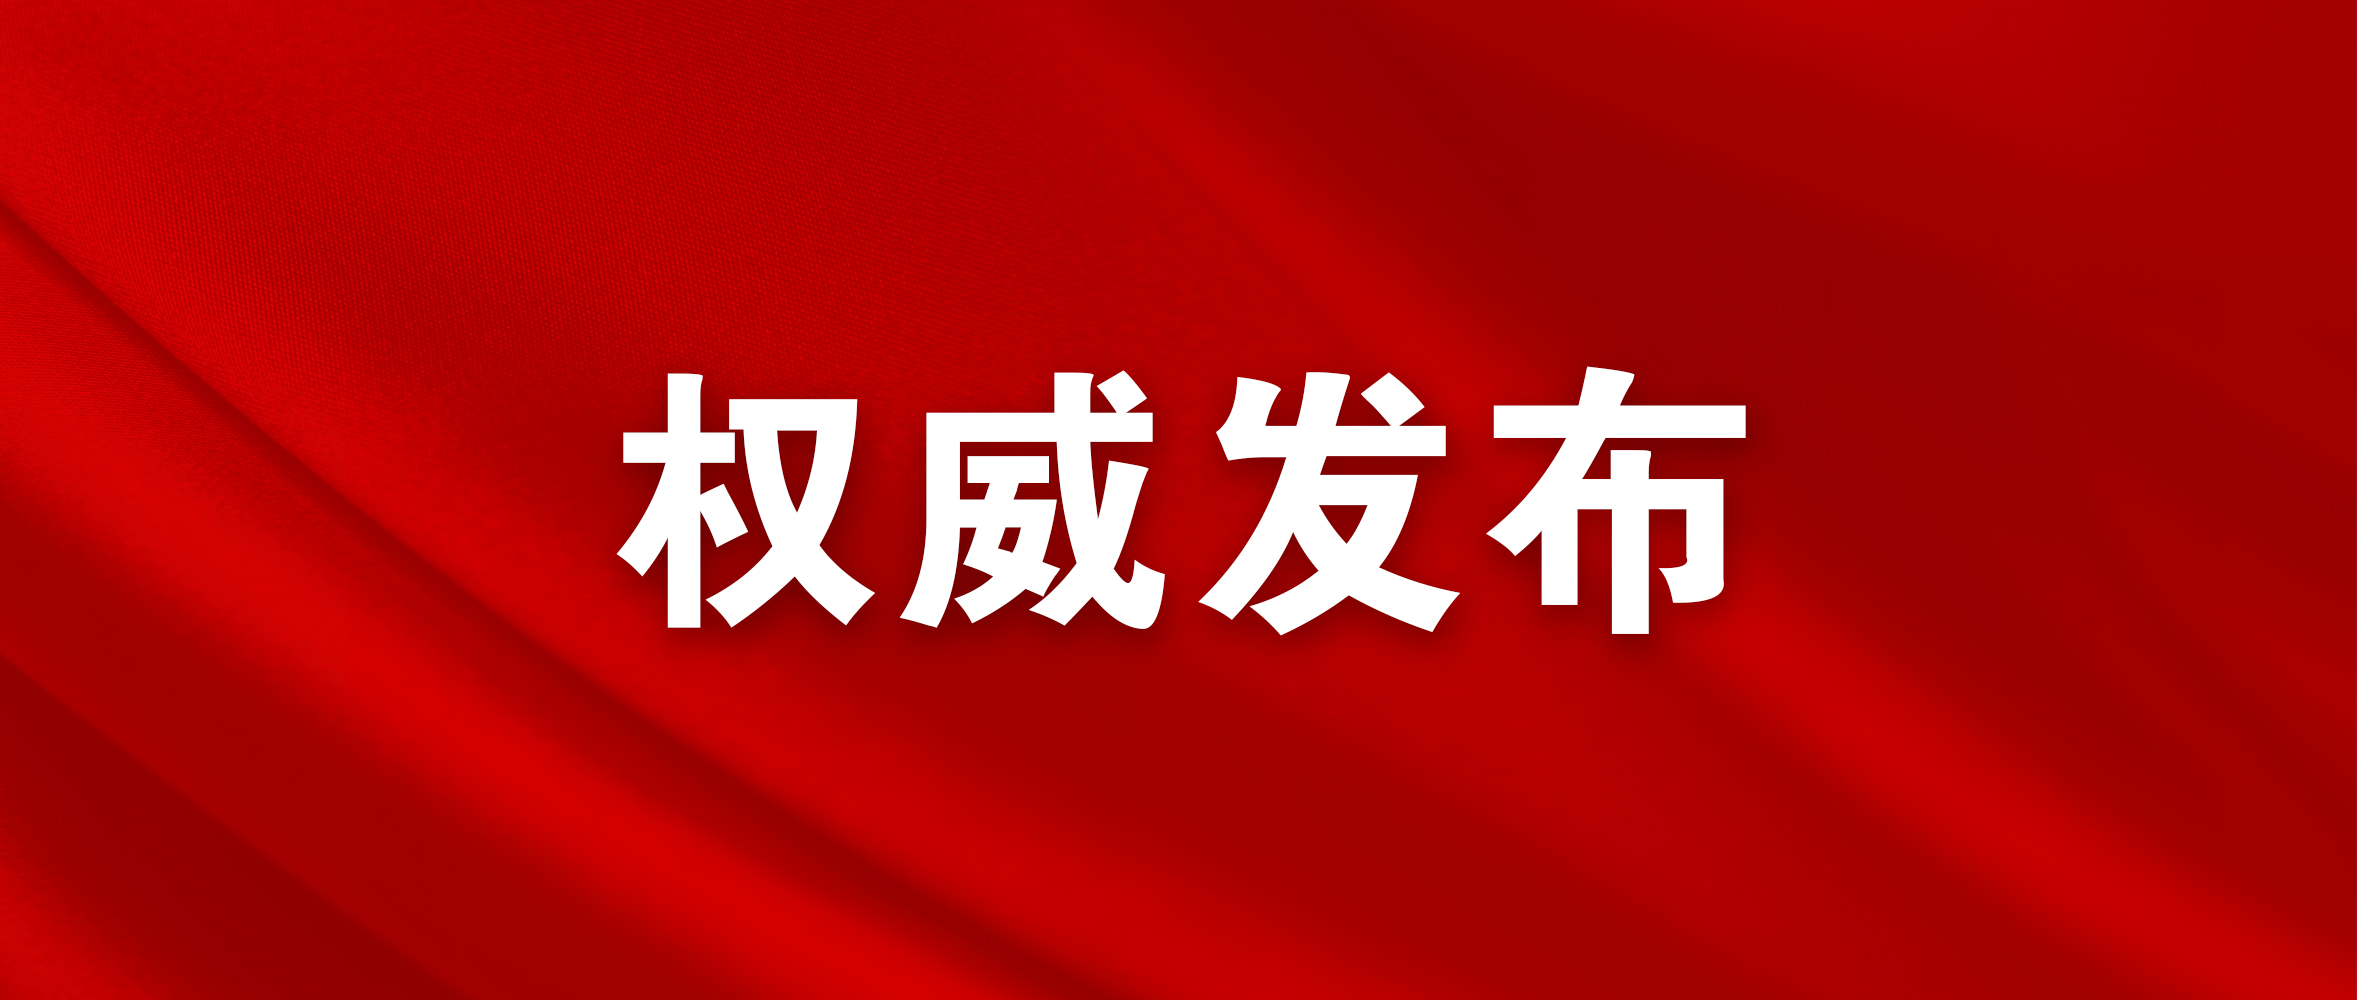 江苏省委主要负责同志职务调整